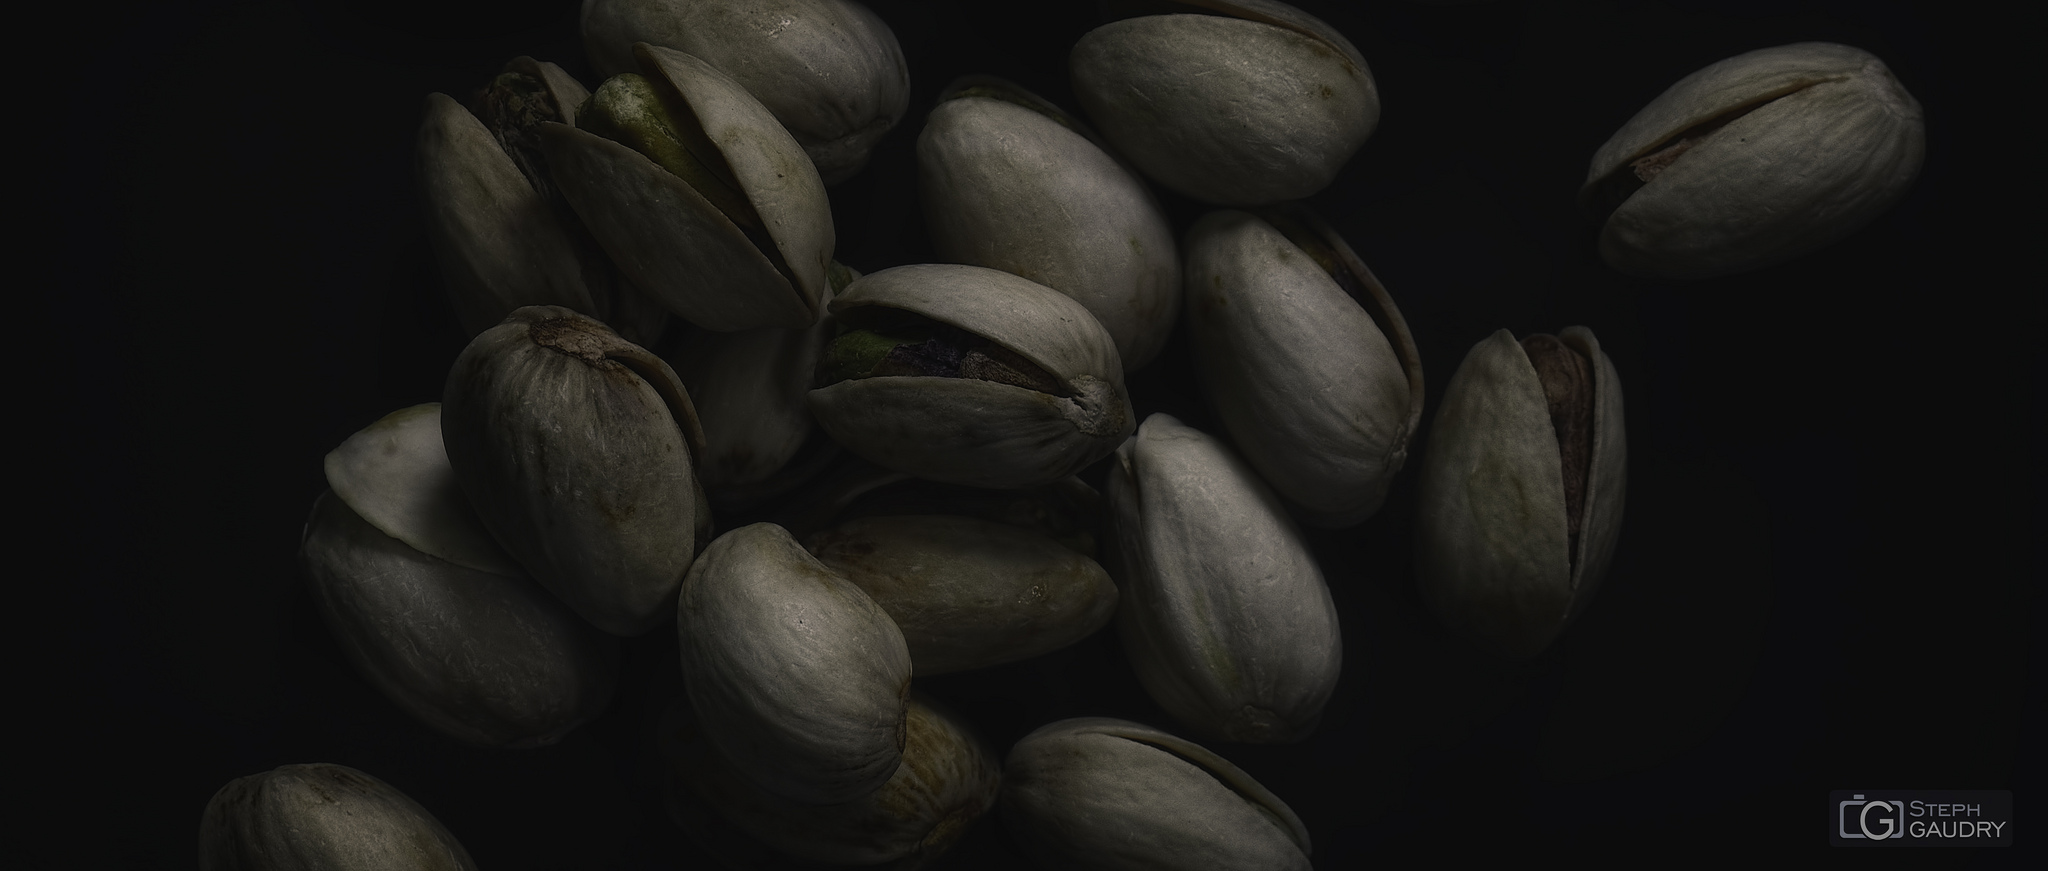 Roasted pistachio seeds with shells [Klik om de diavoorstelling te starten]